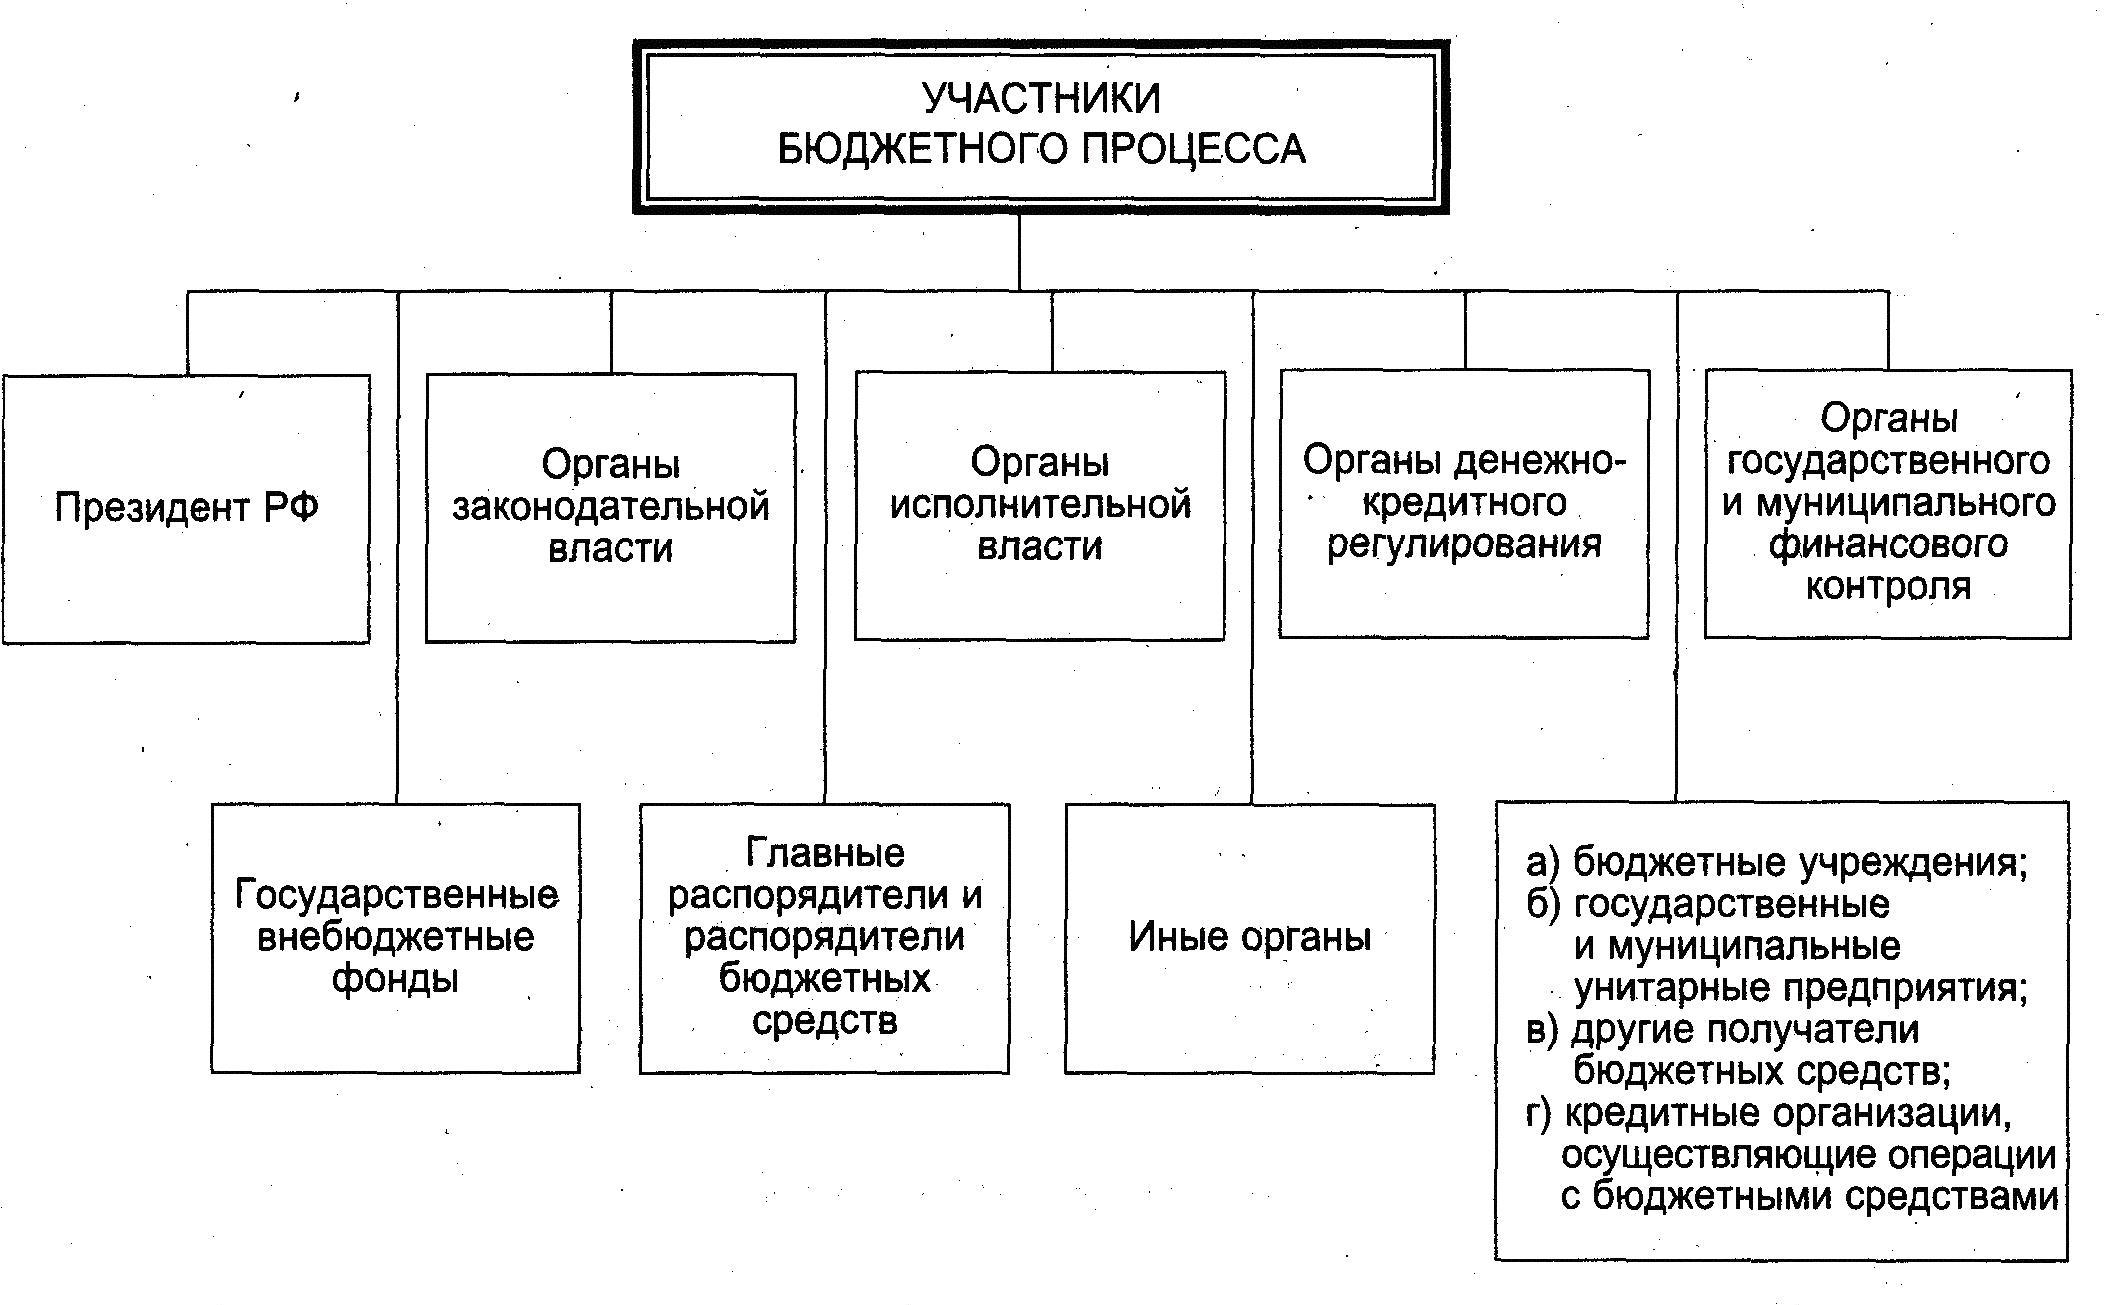 Курсовая работа: Бюджет, бюджетное устройство Российской Федерации и основные направления бюджетной политики